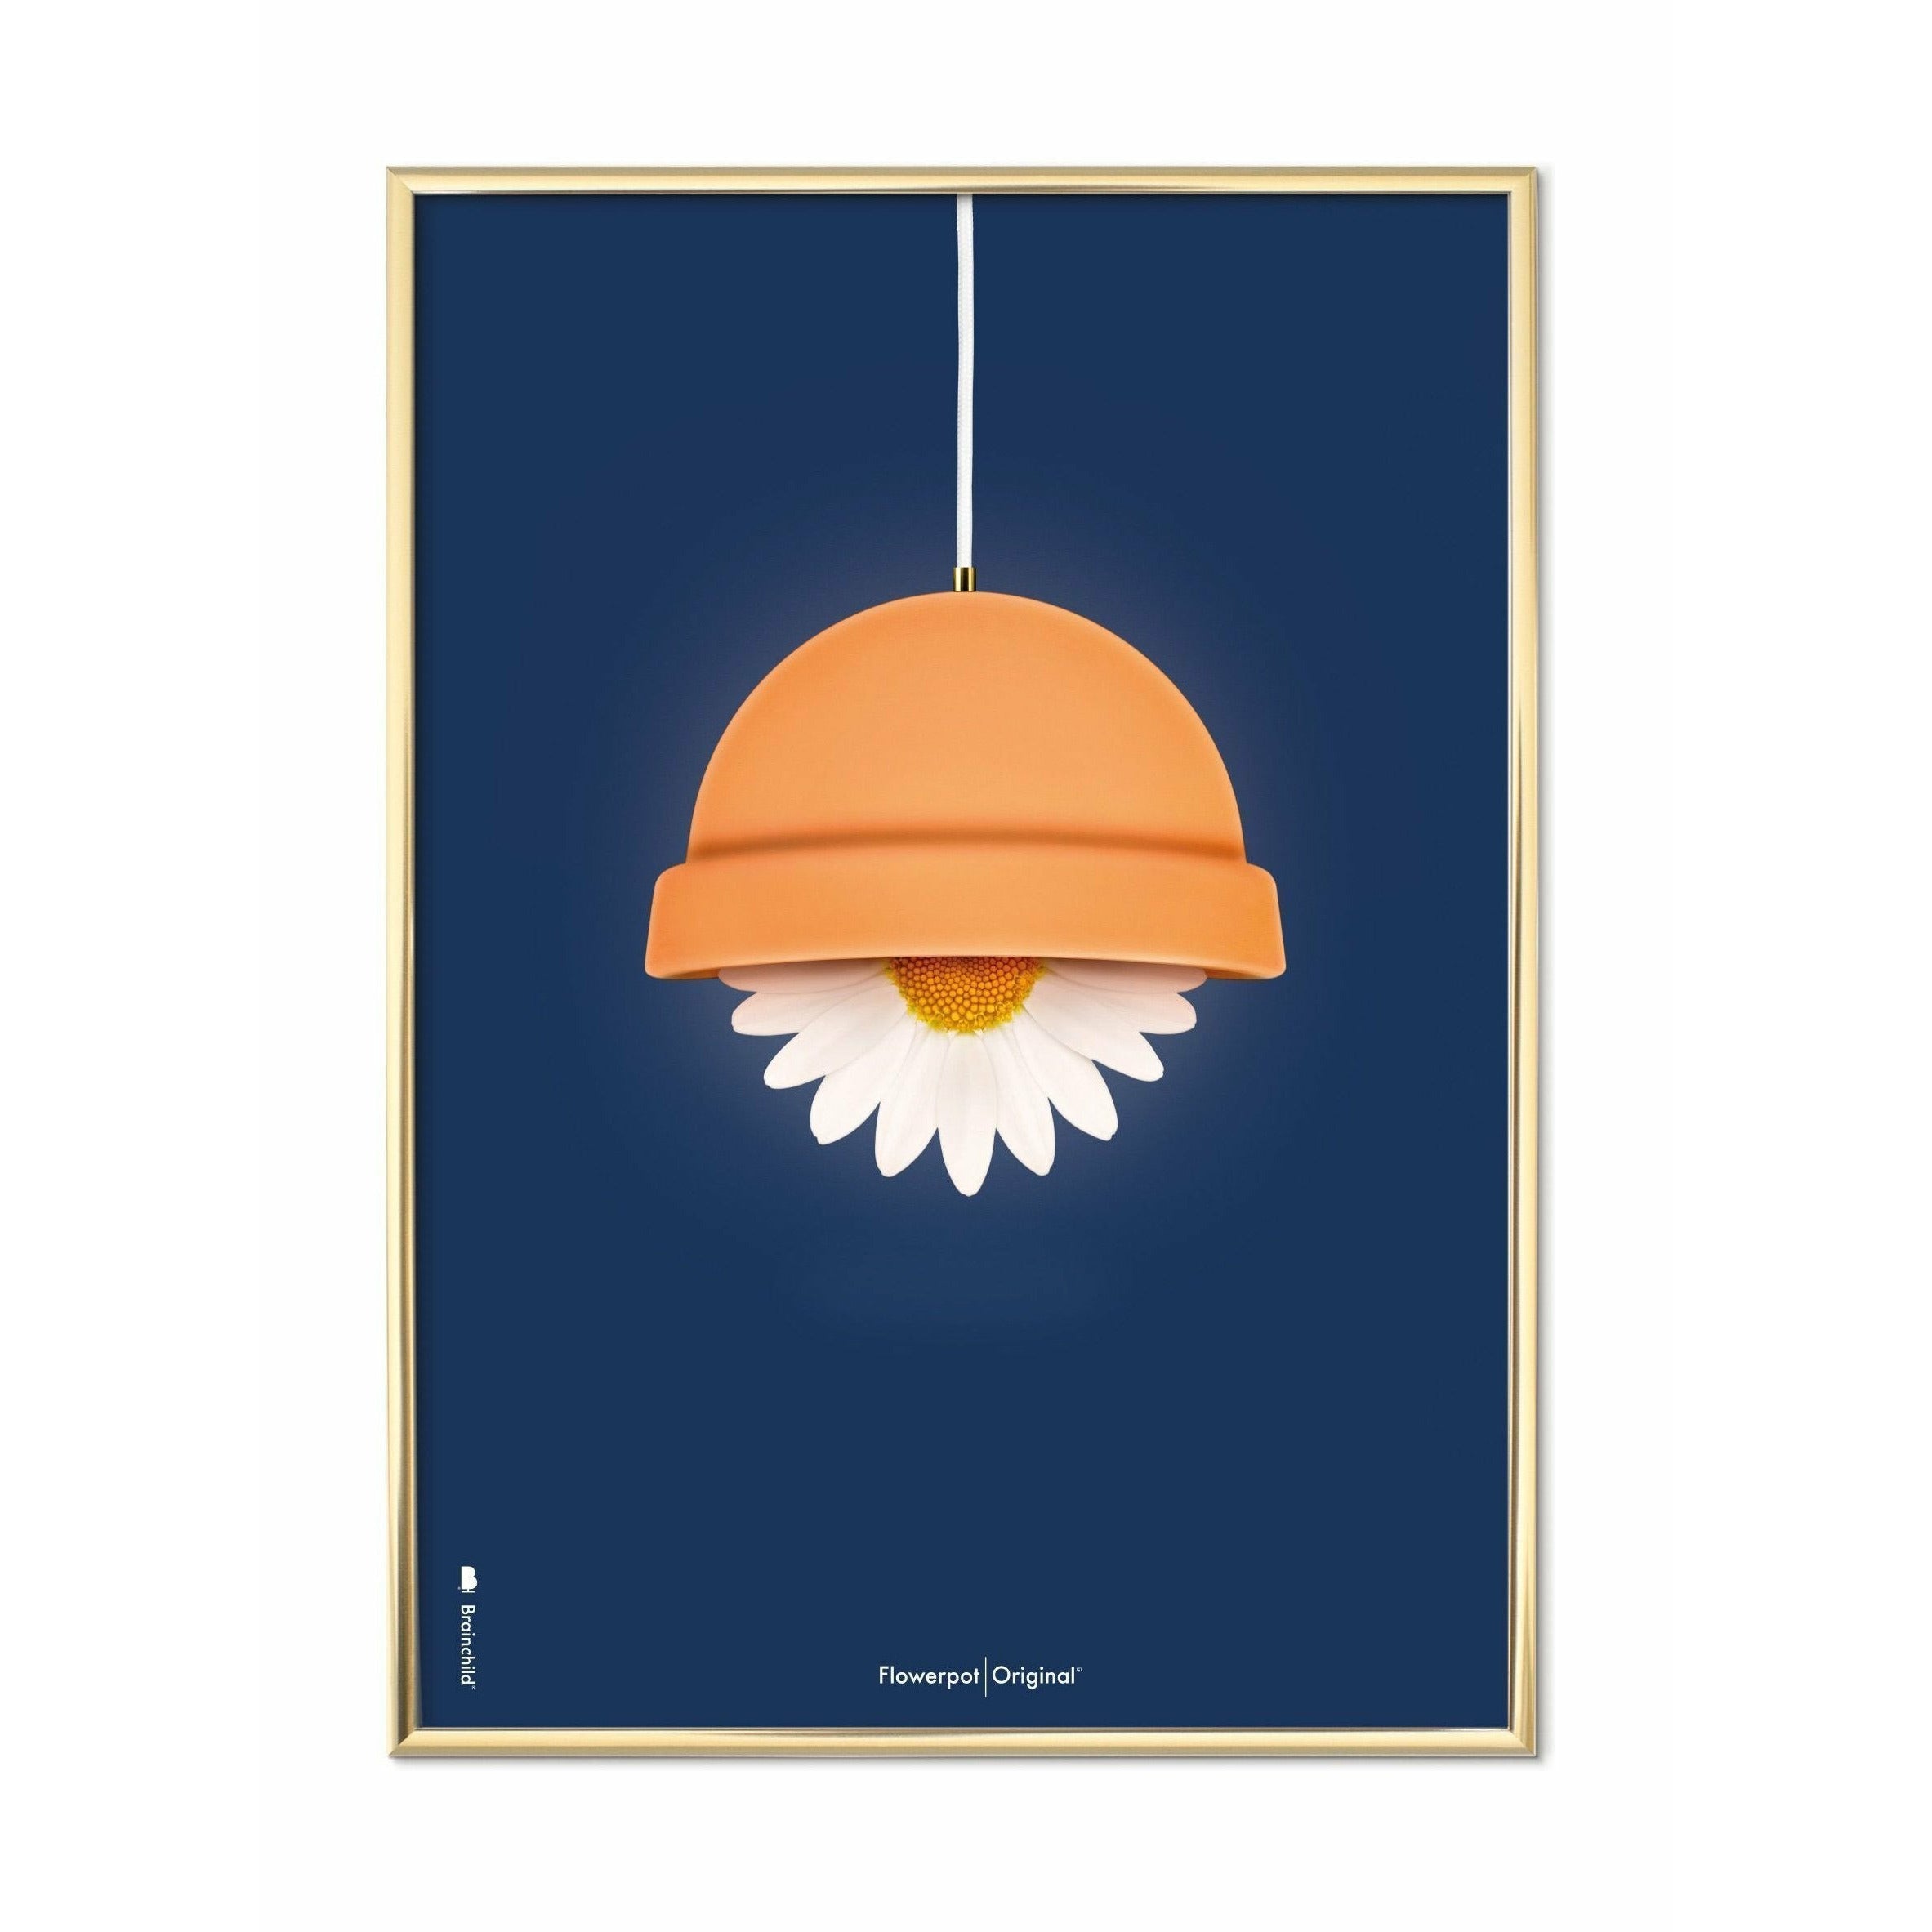 Brainchild Blumentopf Classic Poster, messingfarbener Rahmen 30x40 cm, dunkelblauer Hintergrund